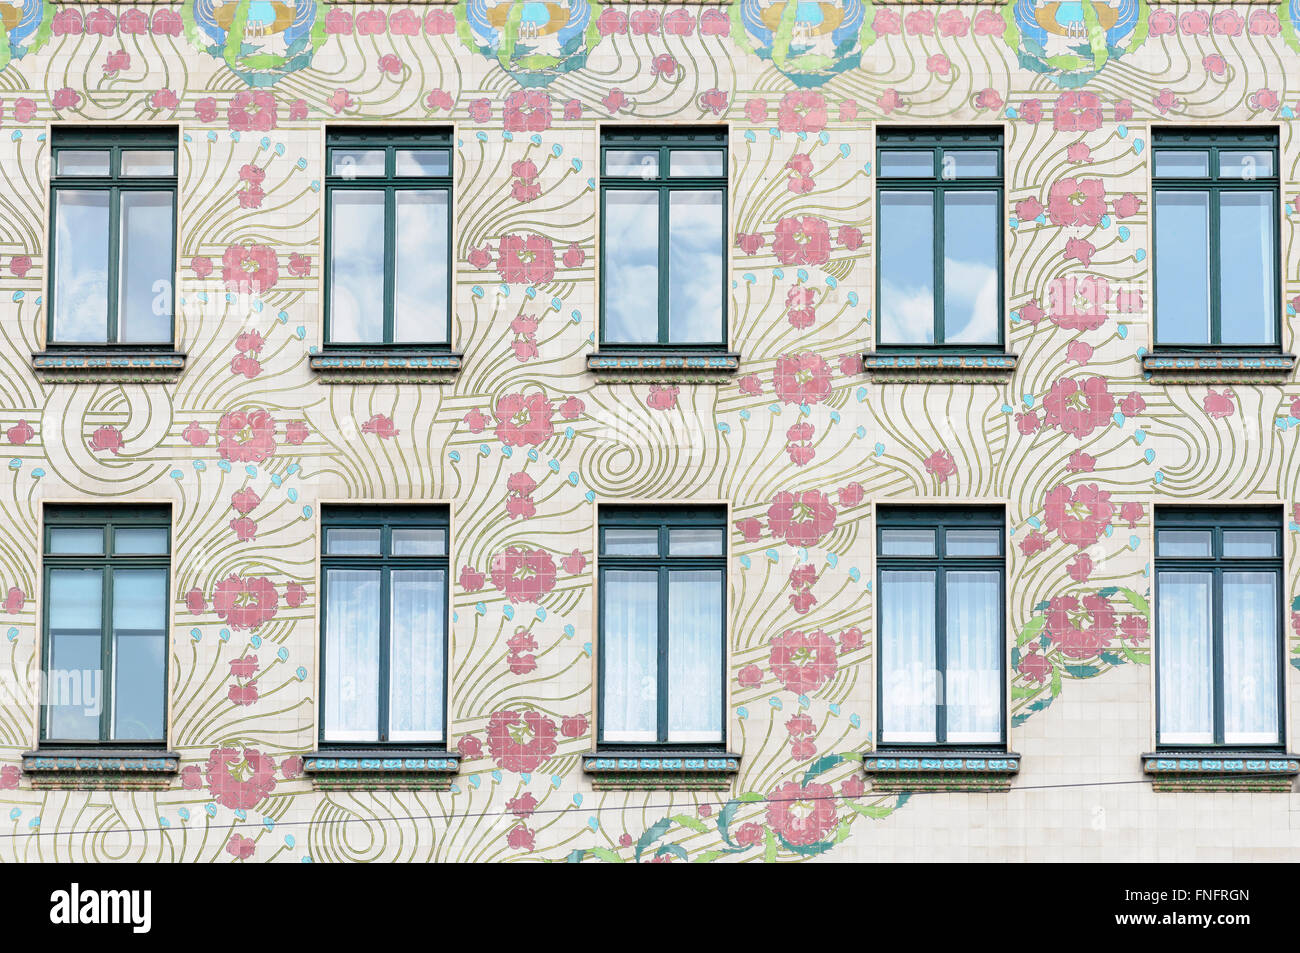 La ornamentada fachada Art Nouveau de la Majolika Haus por Otto Wagner, en Viena, Austria Foto de stock